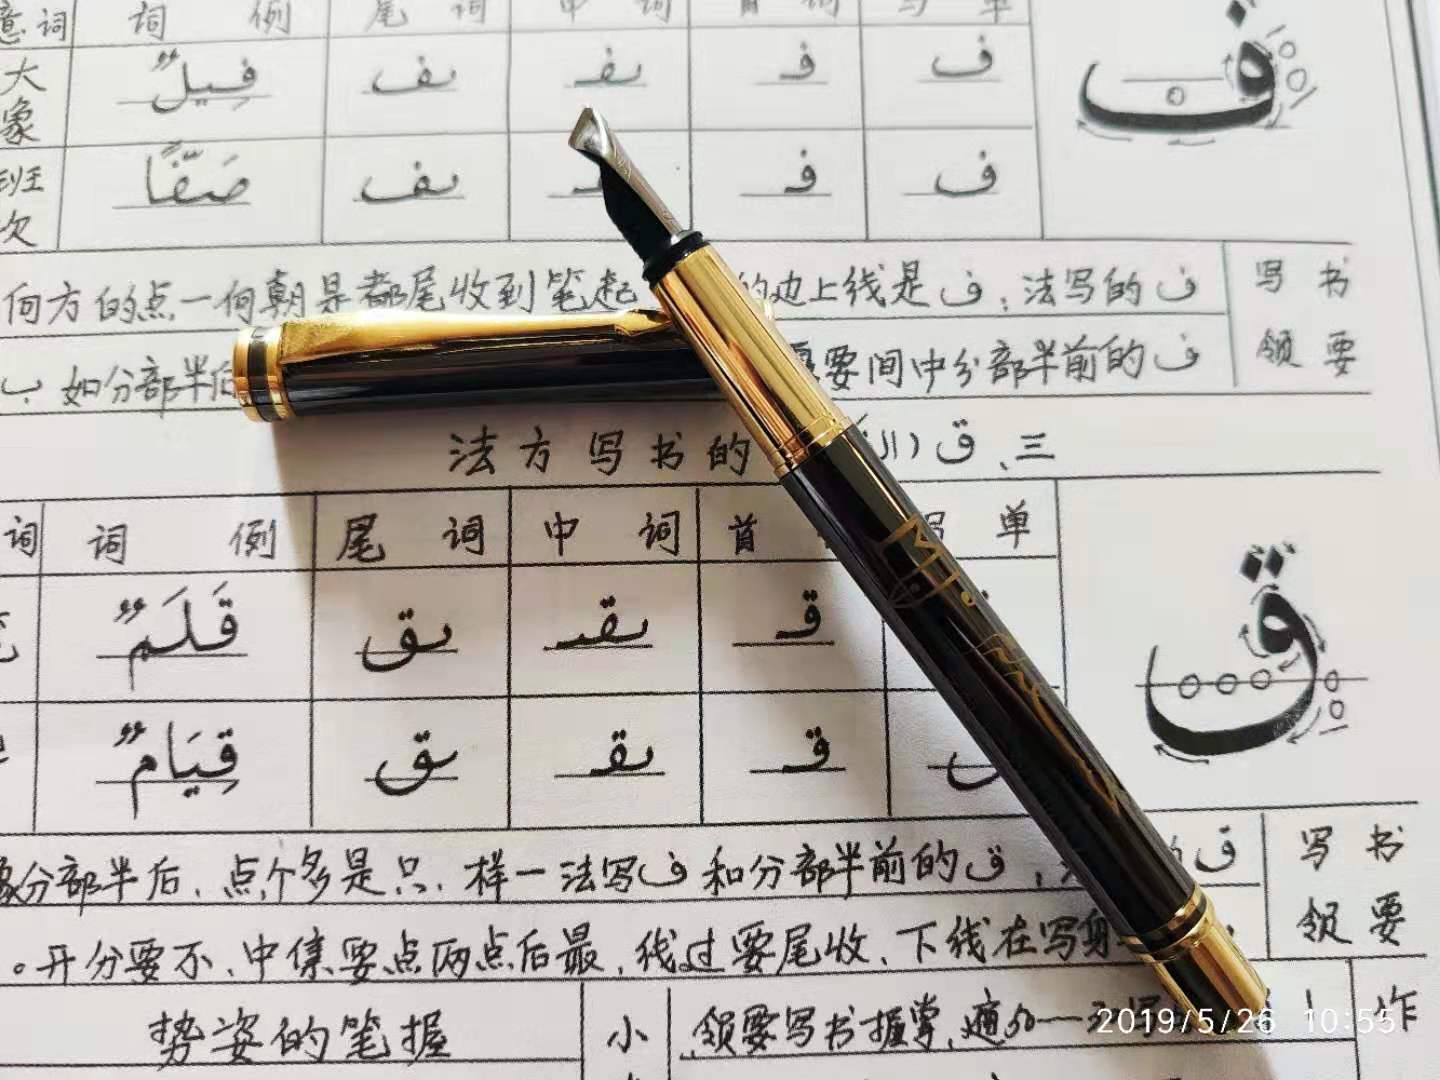 金星阿拉伯语书法笔美工笔多种尺寸初学者建议尺寸1.2MM和2MM